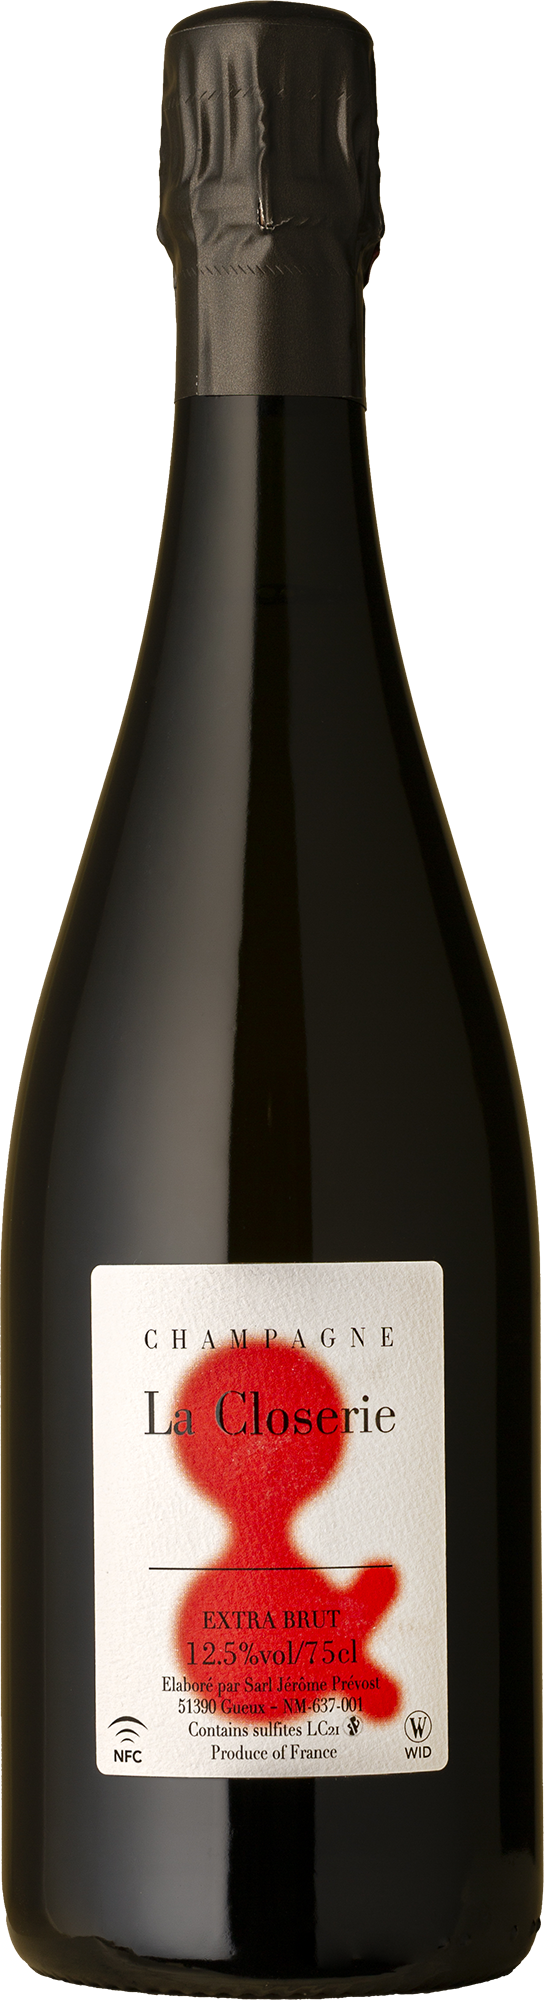 Jérôme Prévost - La Closerie LC21 NV Sparkling Wine